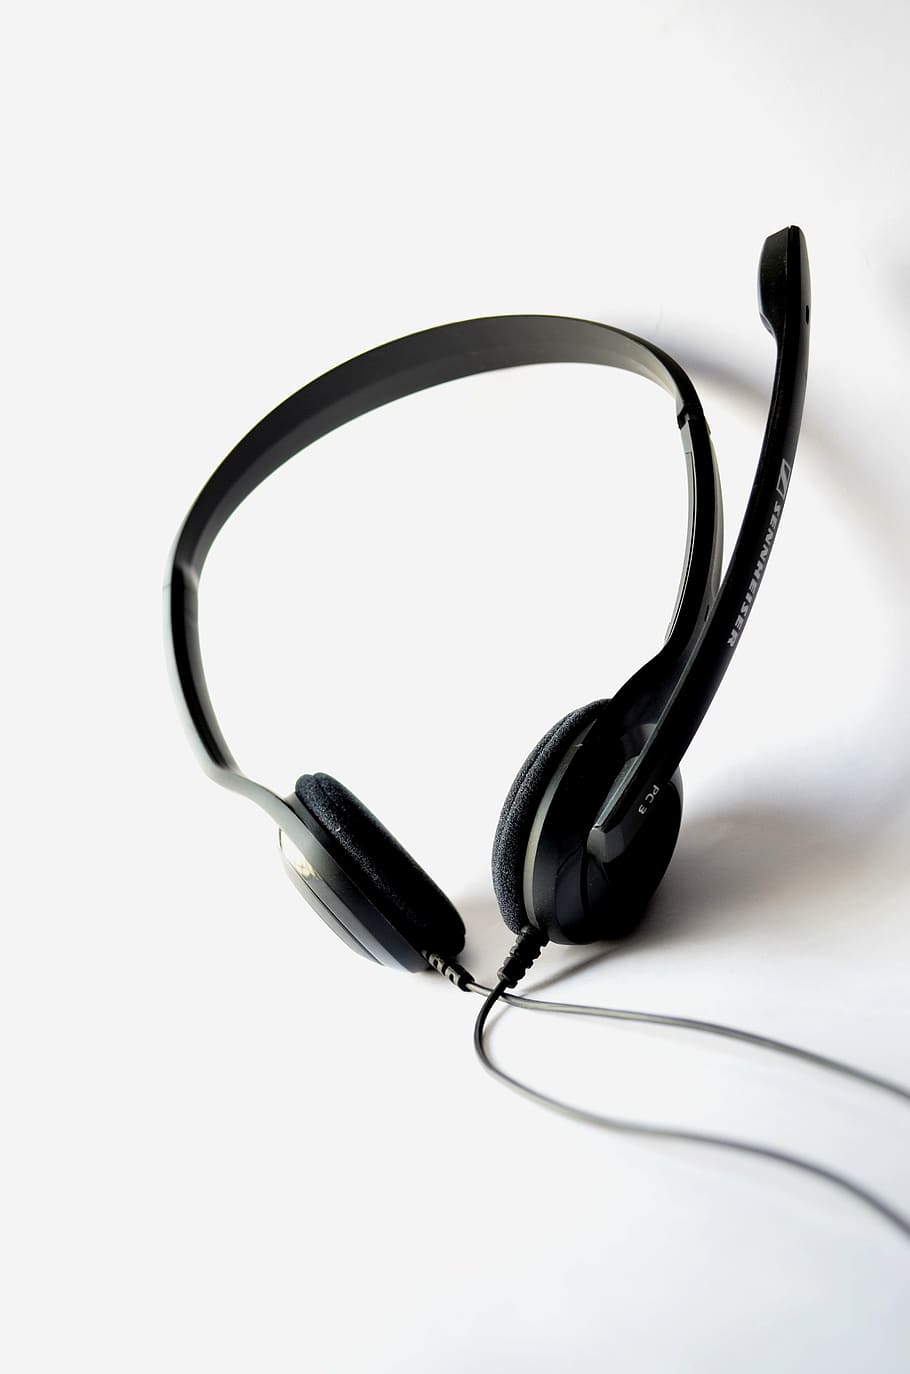 headphone dengan kabel hitam, headphone, mikrofon, headset, audio, teknologi, komunikasi, siaran, suara, rekaman